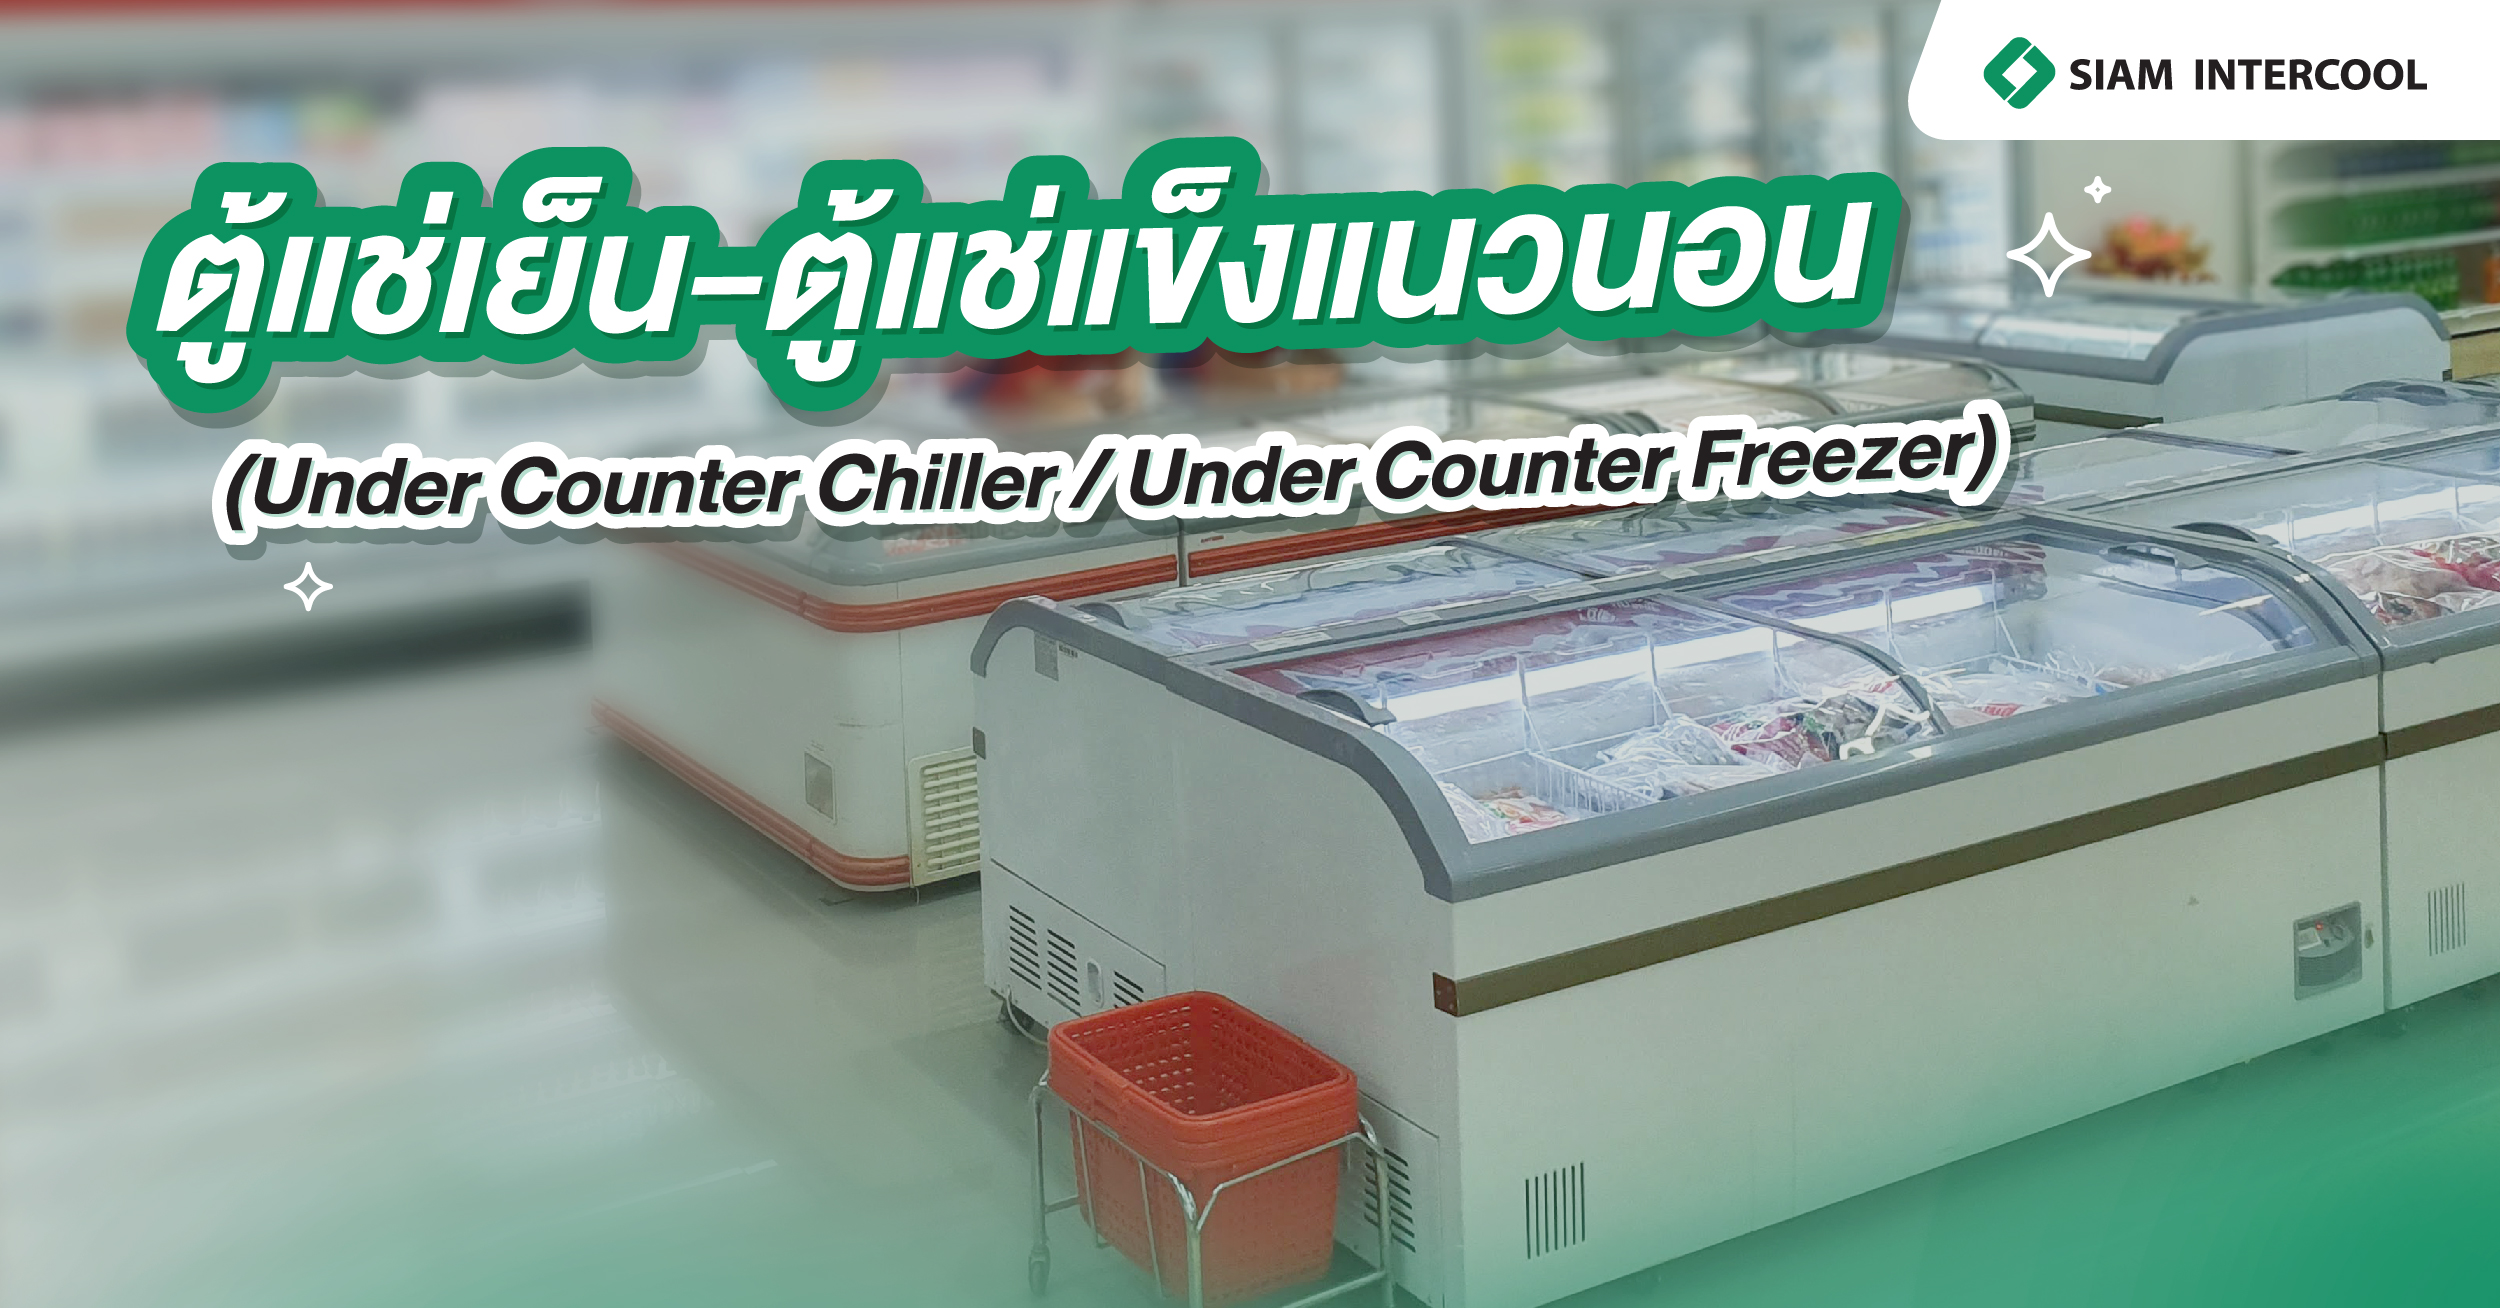  ตู้แช่เย็น-ตู้แช่แข็งแนวนอน (Under Counter Chiller / Under Counter Freezer)